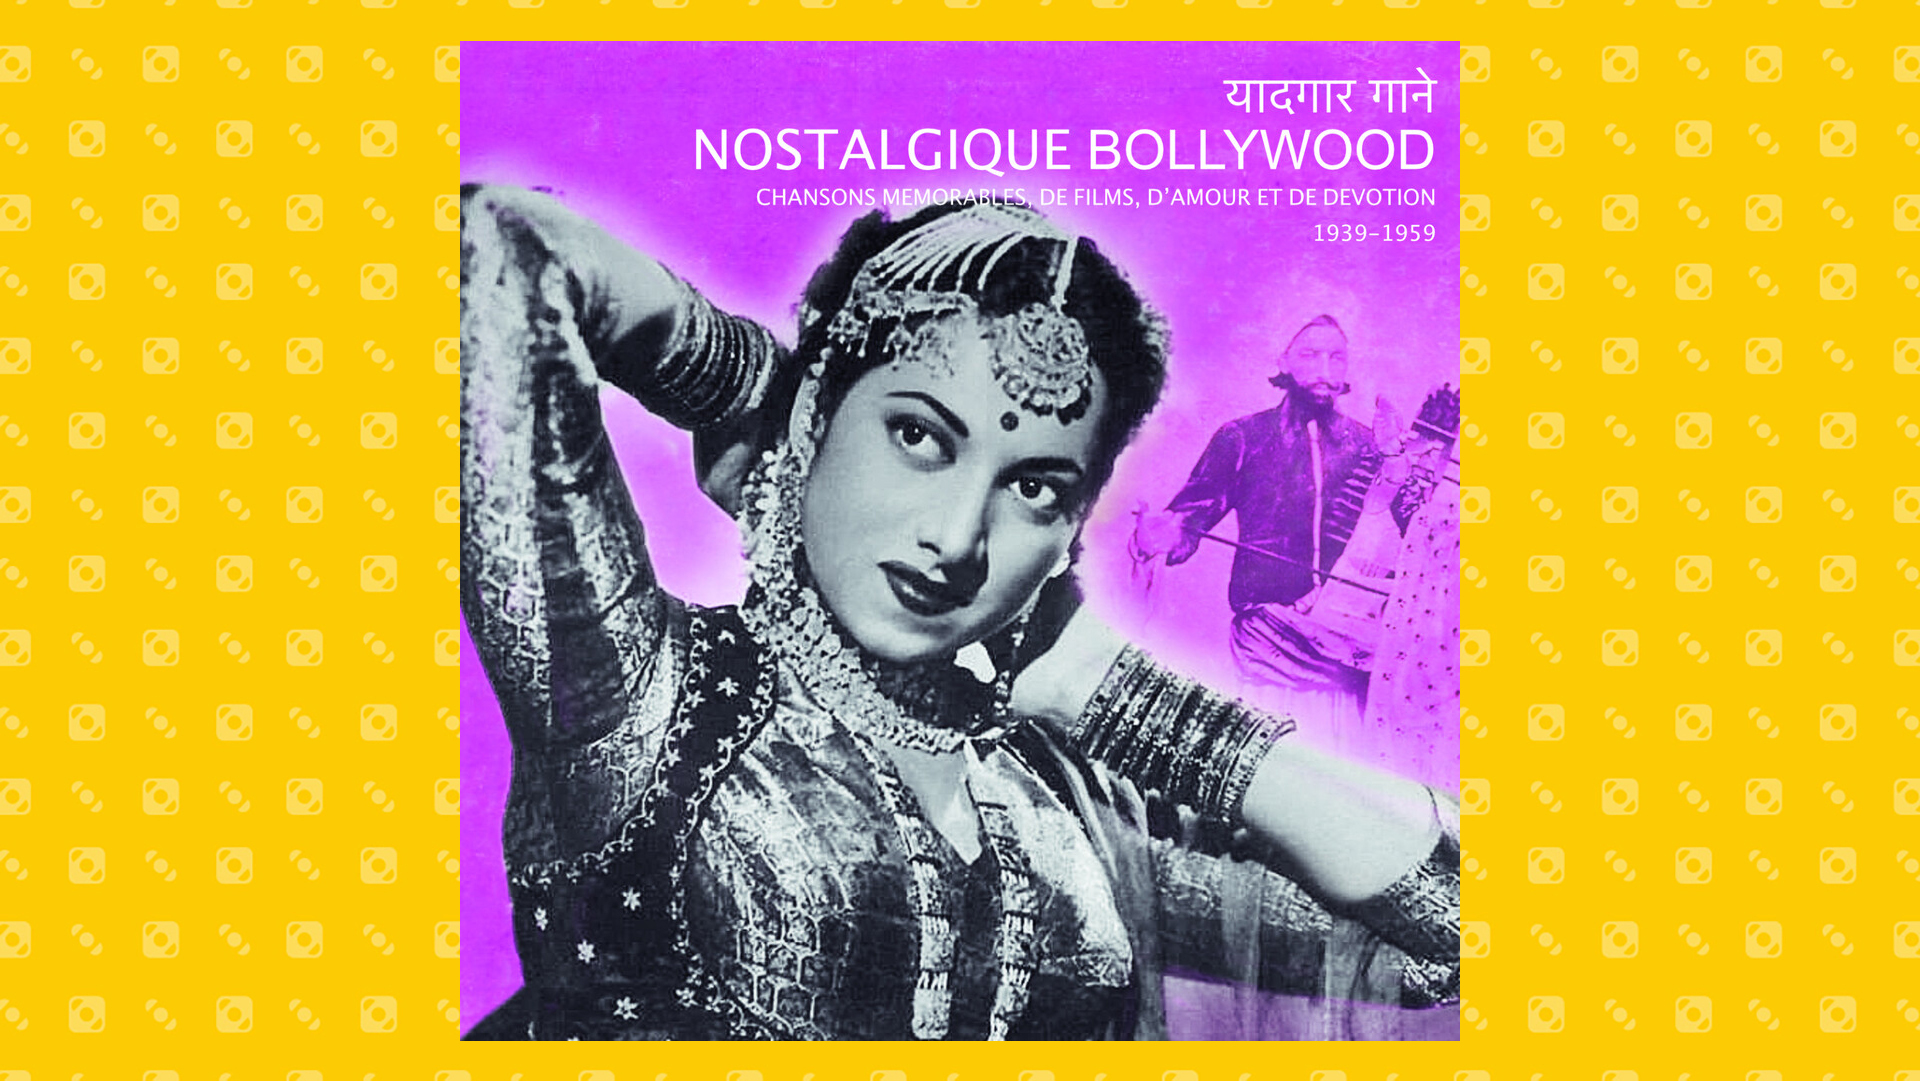 Nostalgique Bollywood